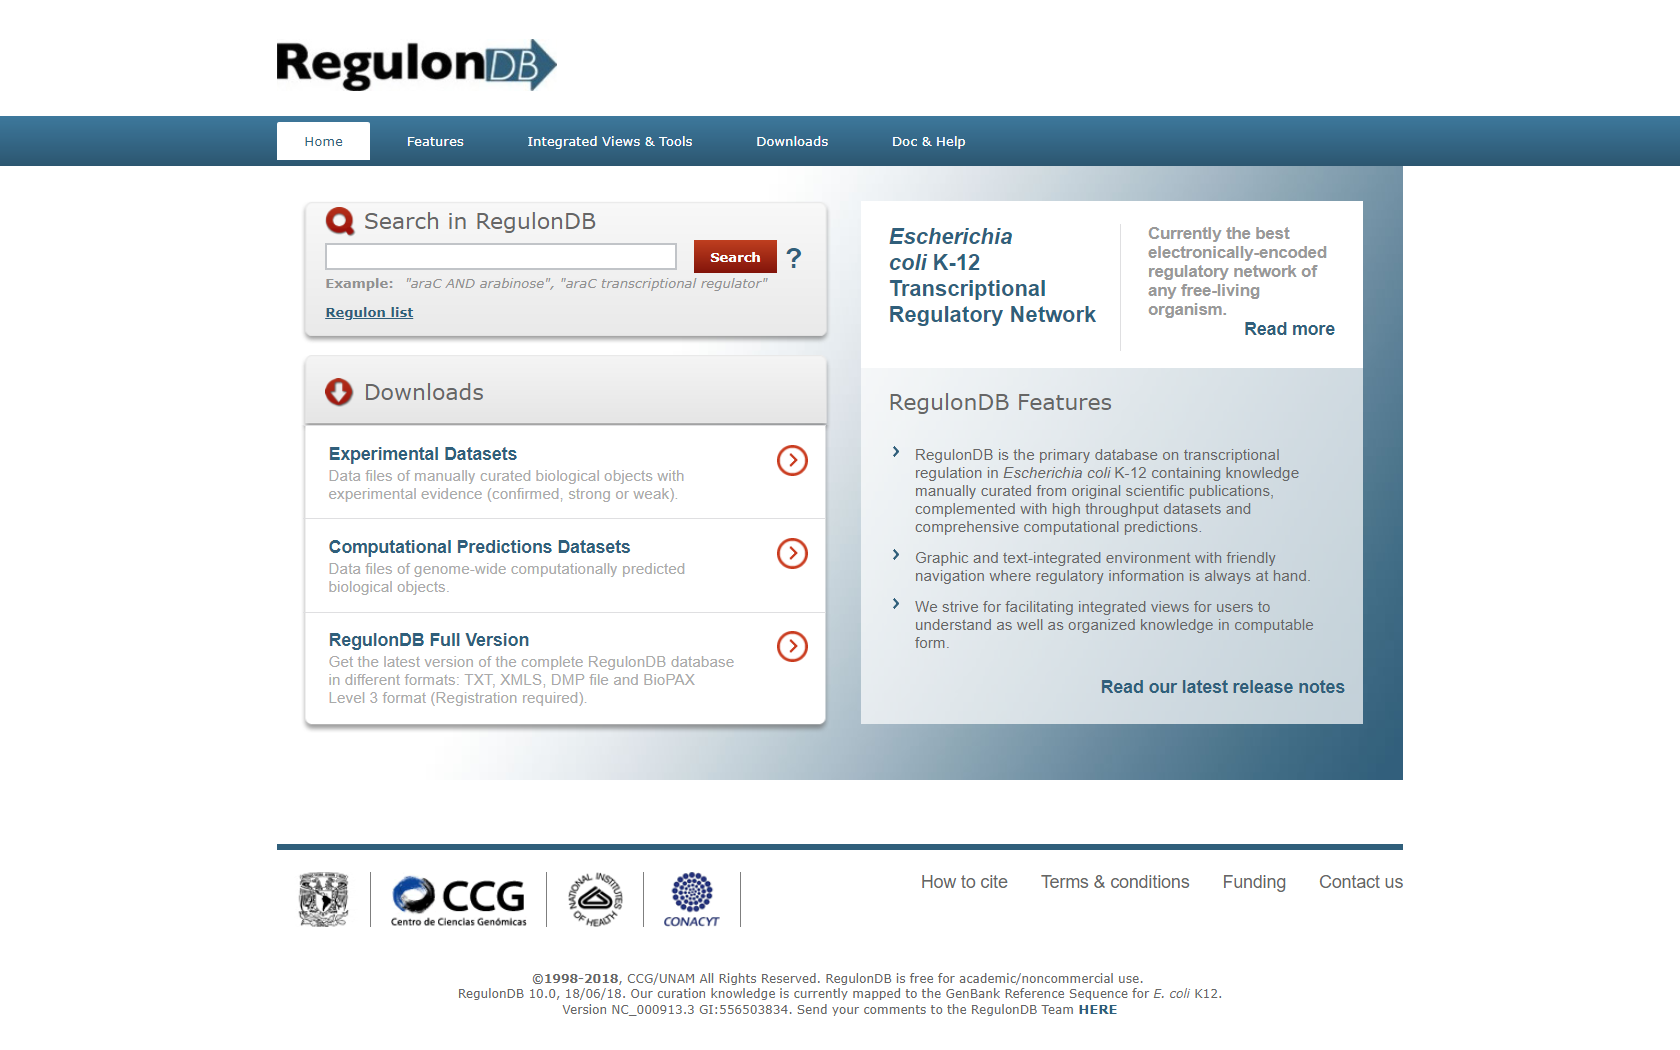 Página principal de RegulonDB (http://regulondb.ccg.unam.mx)